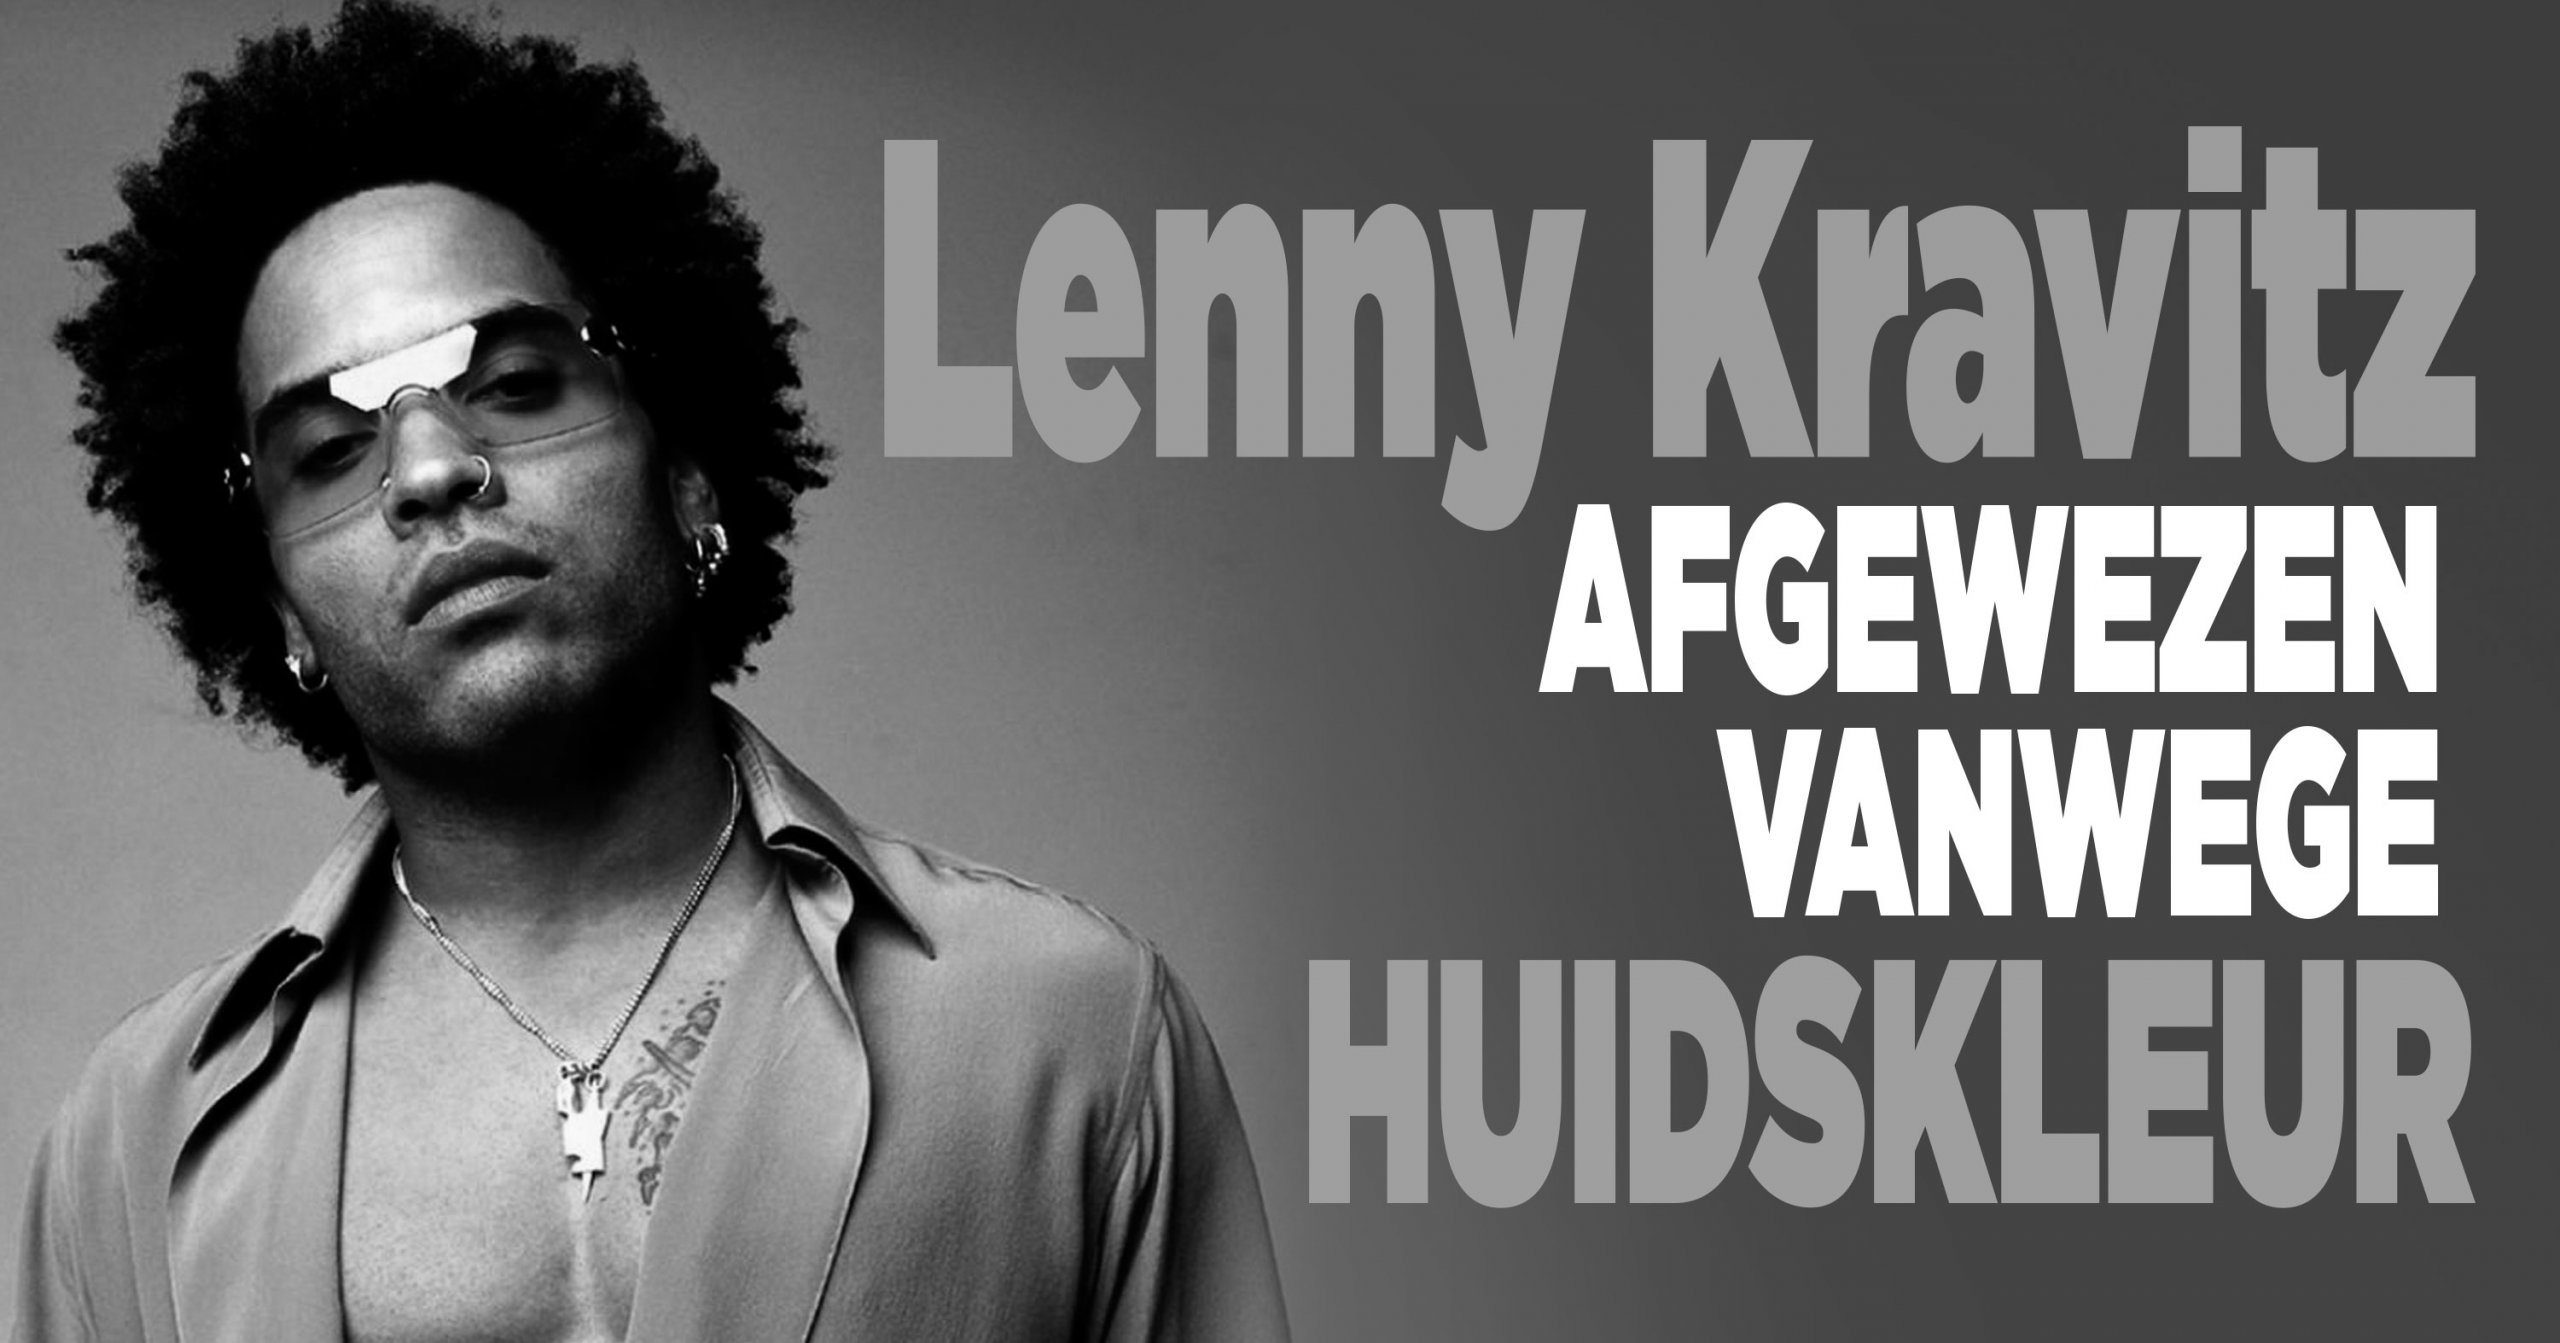 Lenny Kravitz afgewezen vanwege huidskleur